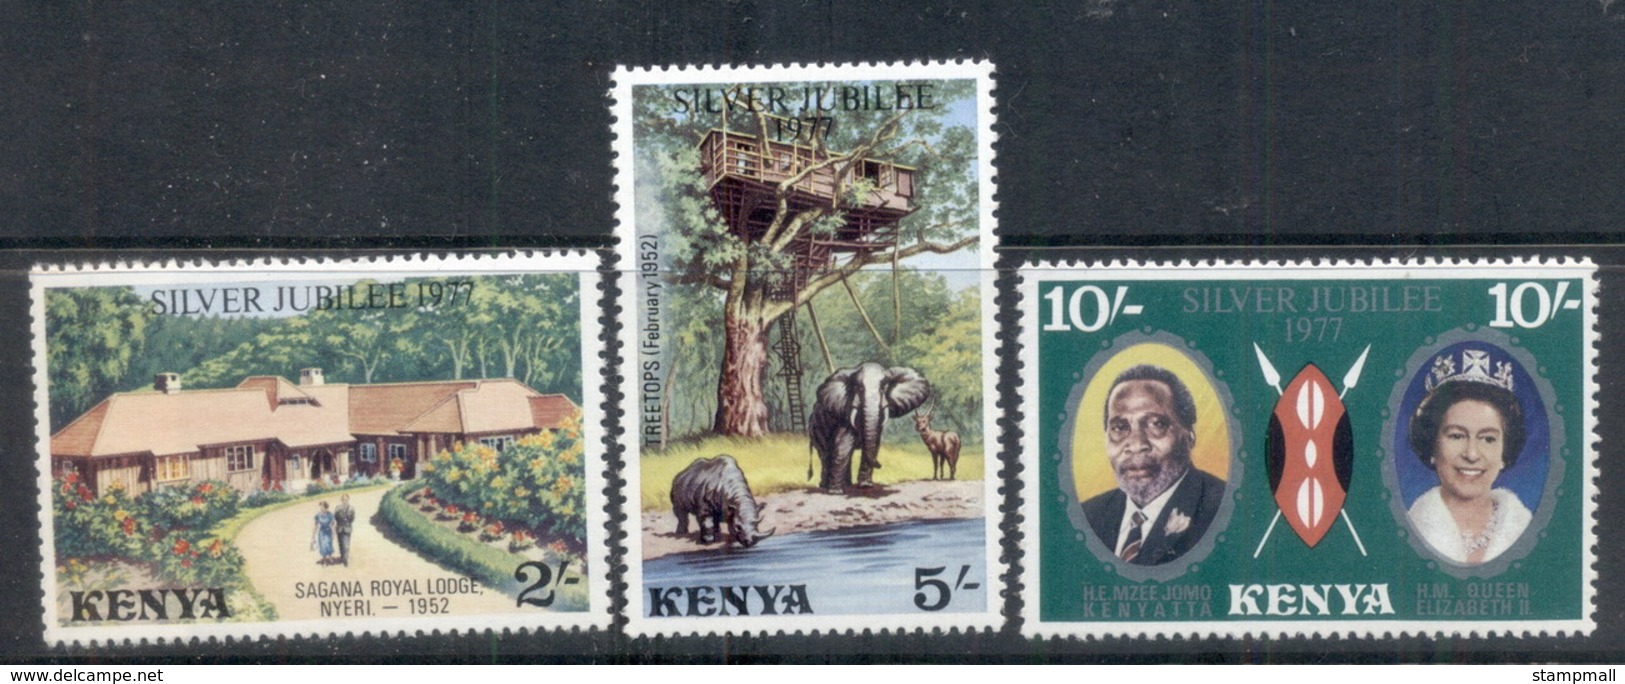 Kenya 1977 QEII Silver Jubilee MUH - Kenya (1963-...)